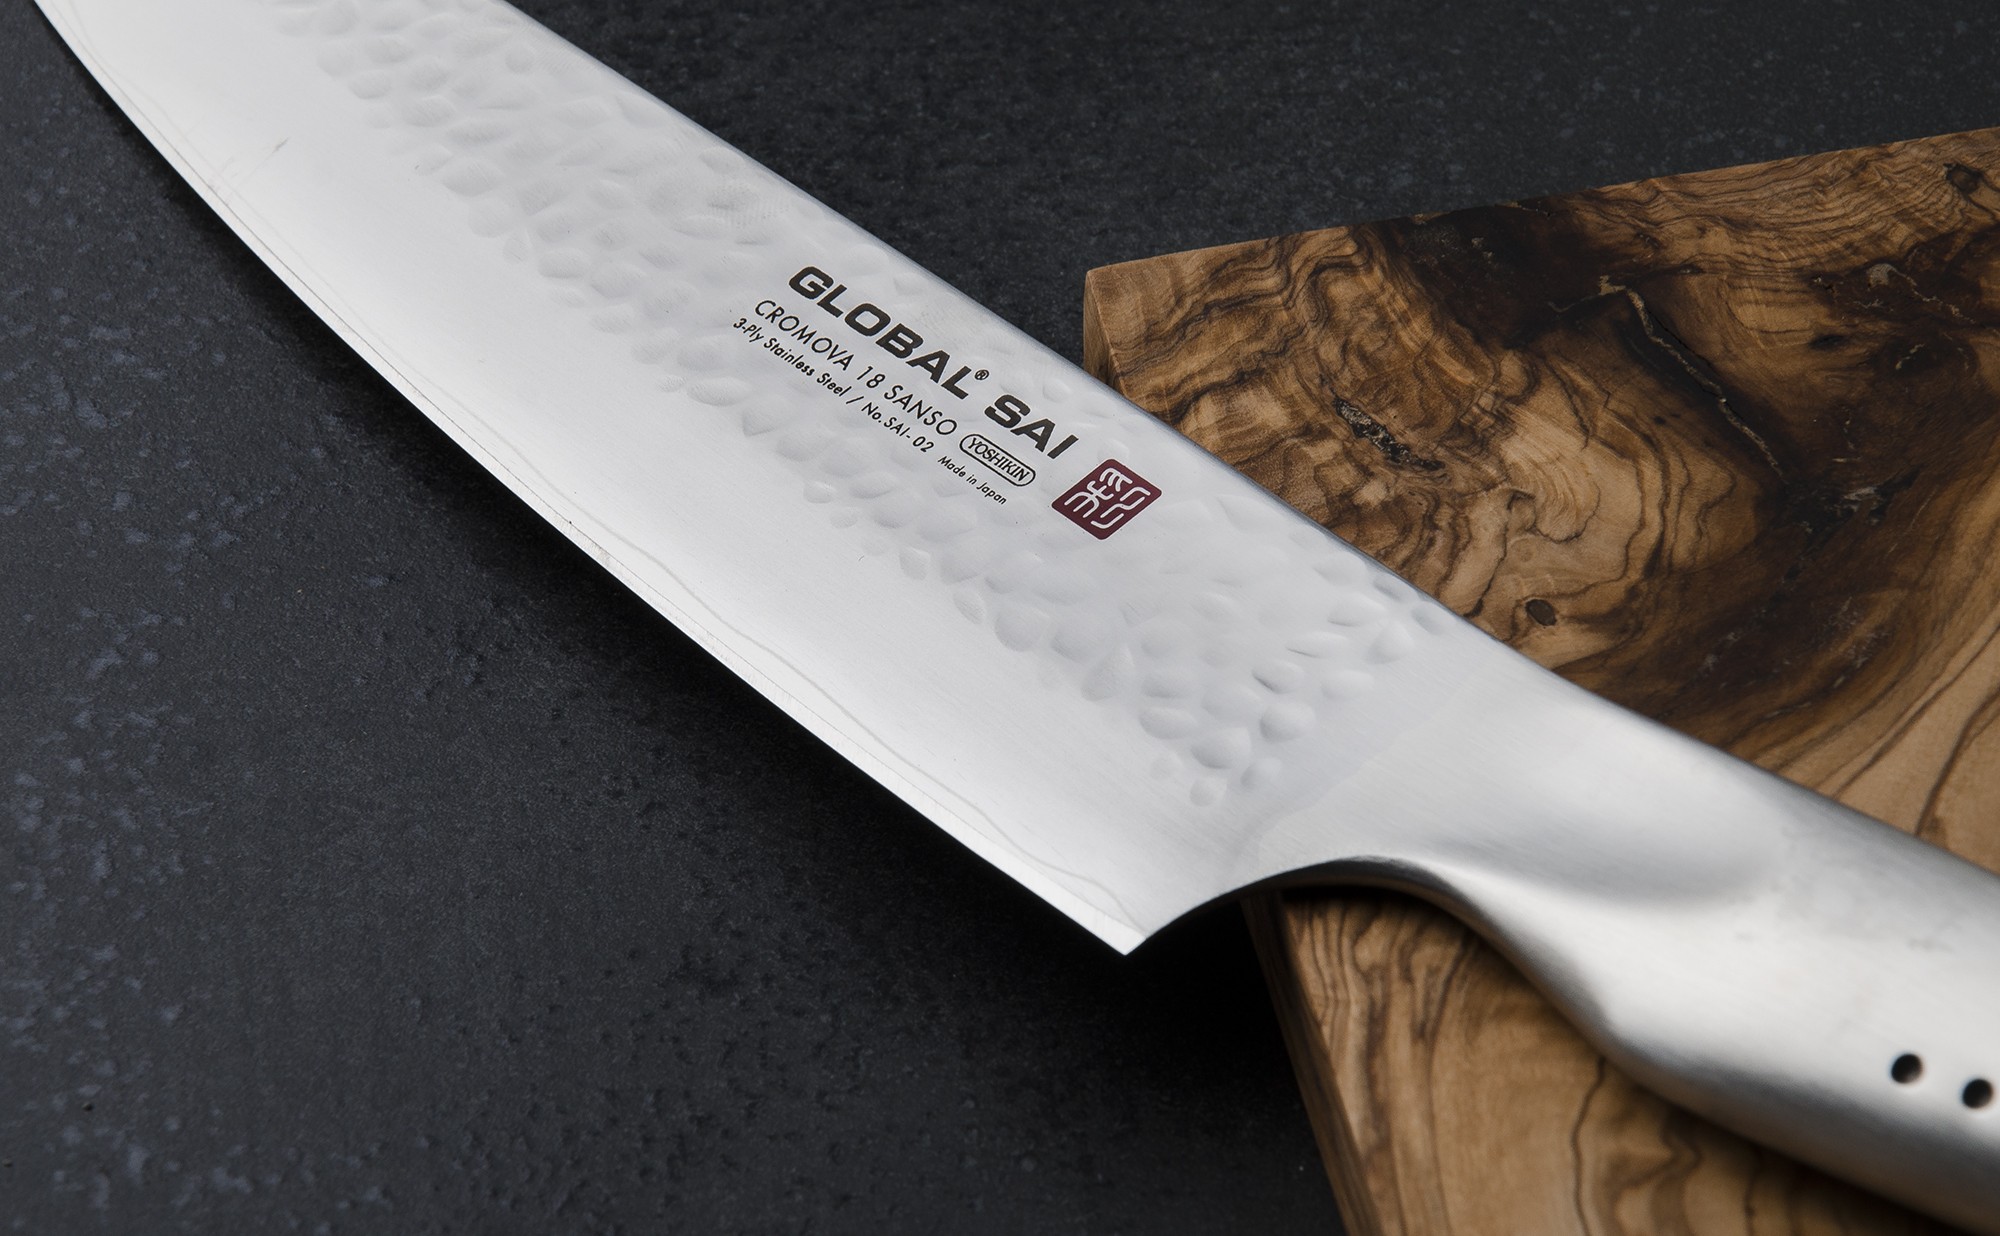 Couteau cuisine japonais Global chef 27cm